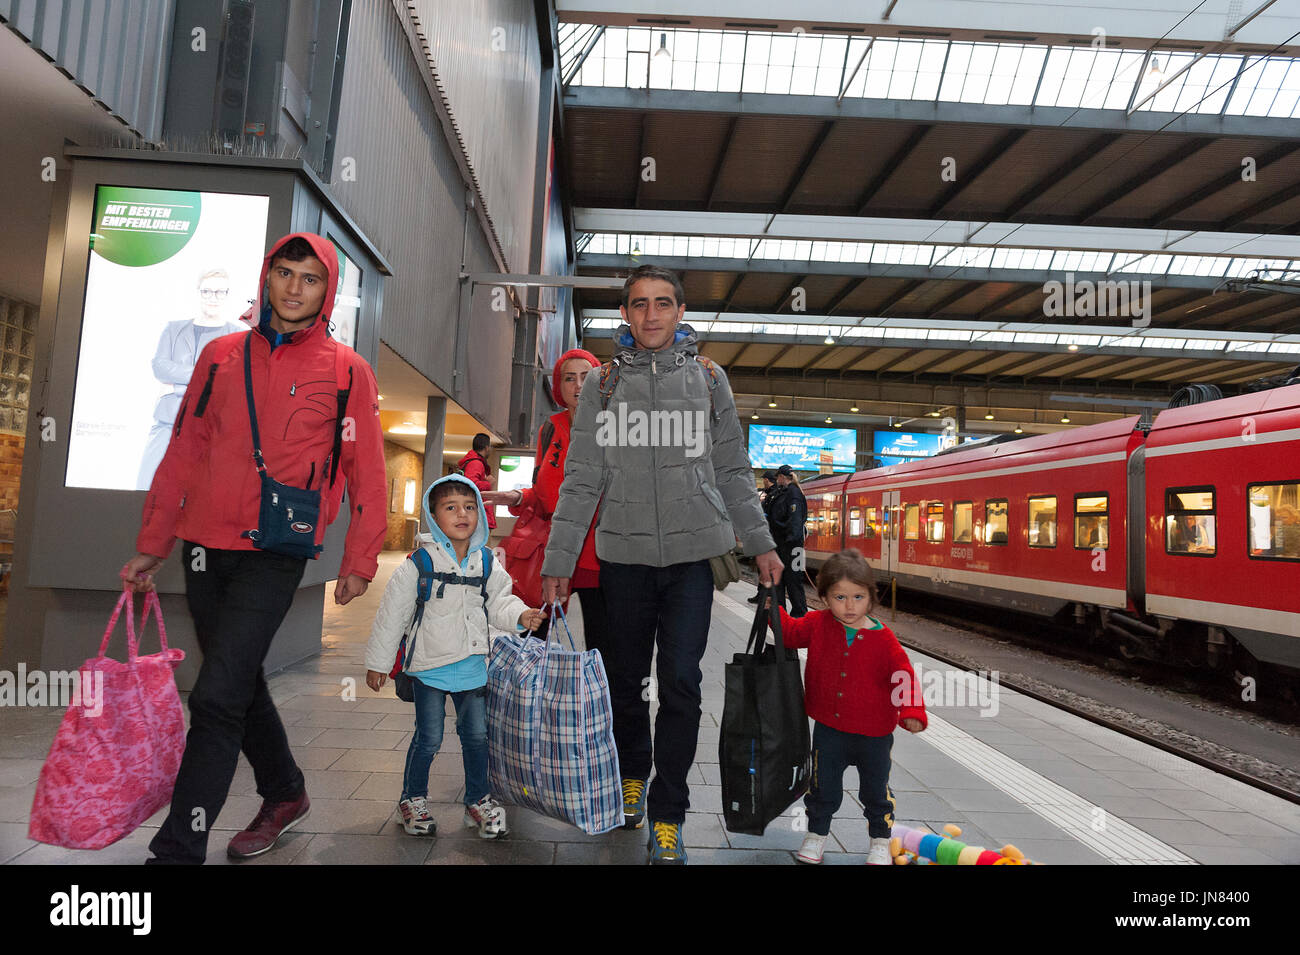 München, Deutschland - 10. September 2015: Zwei syrische Flüchtlingsfamilien in München Bahnhof. Sie sind auf der Suche nach Asyl in Europa. Stockfoto